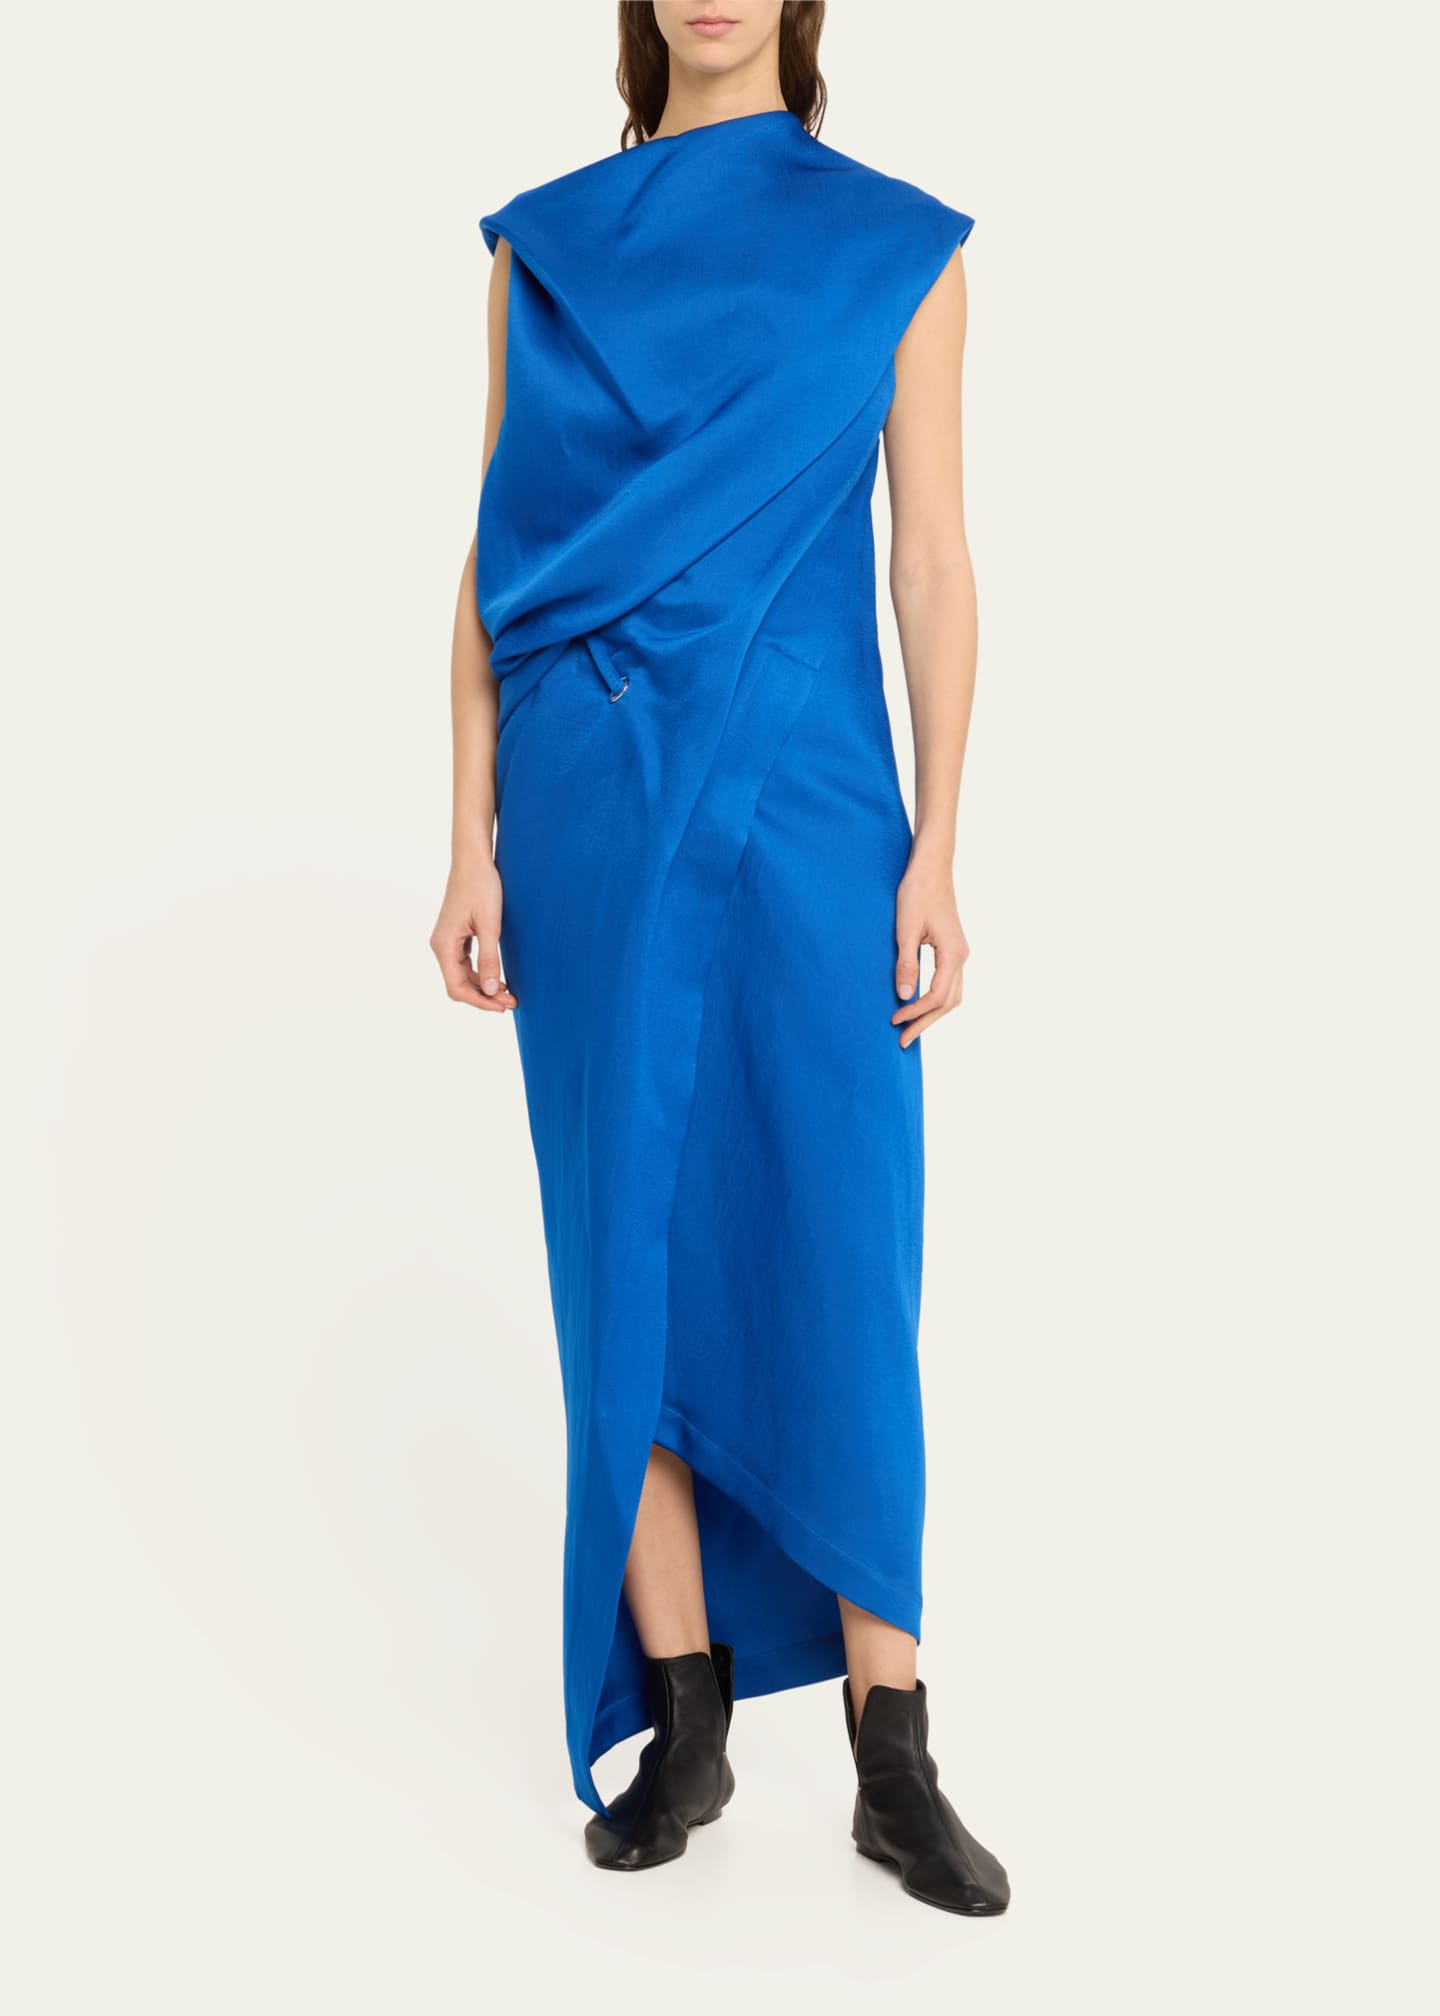 Issey Miyake Enveloping Asymmetric Draped Dress - Bergdorf Goodman